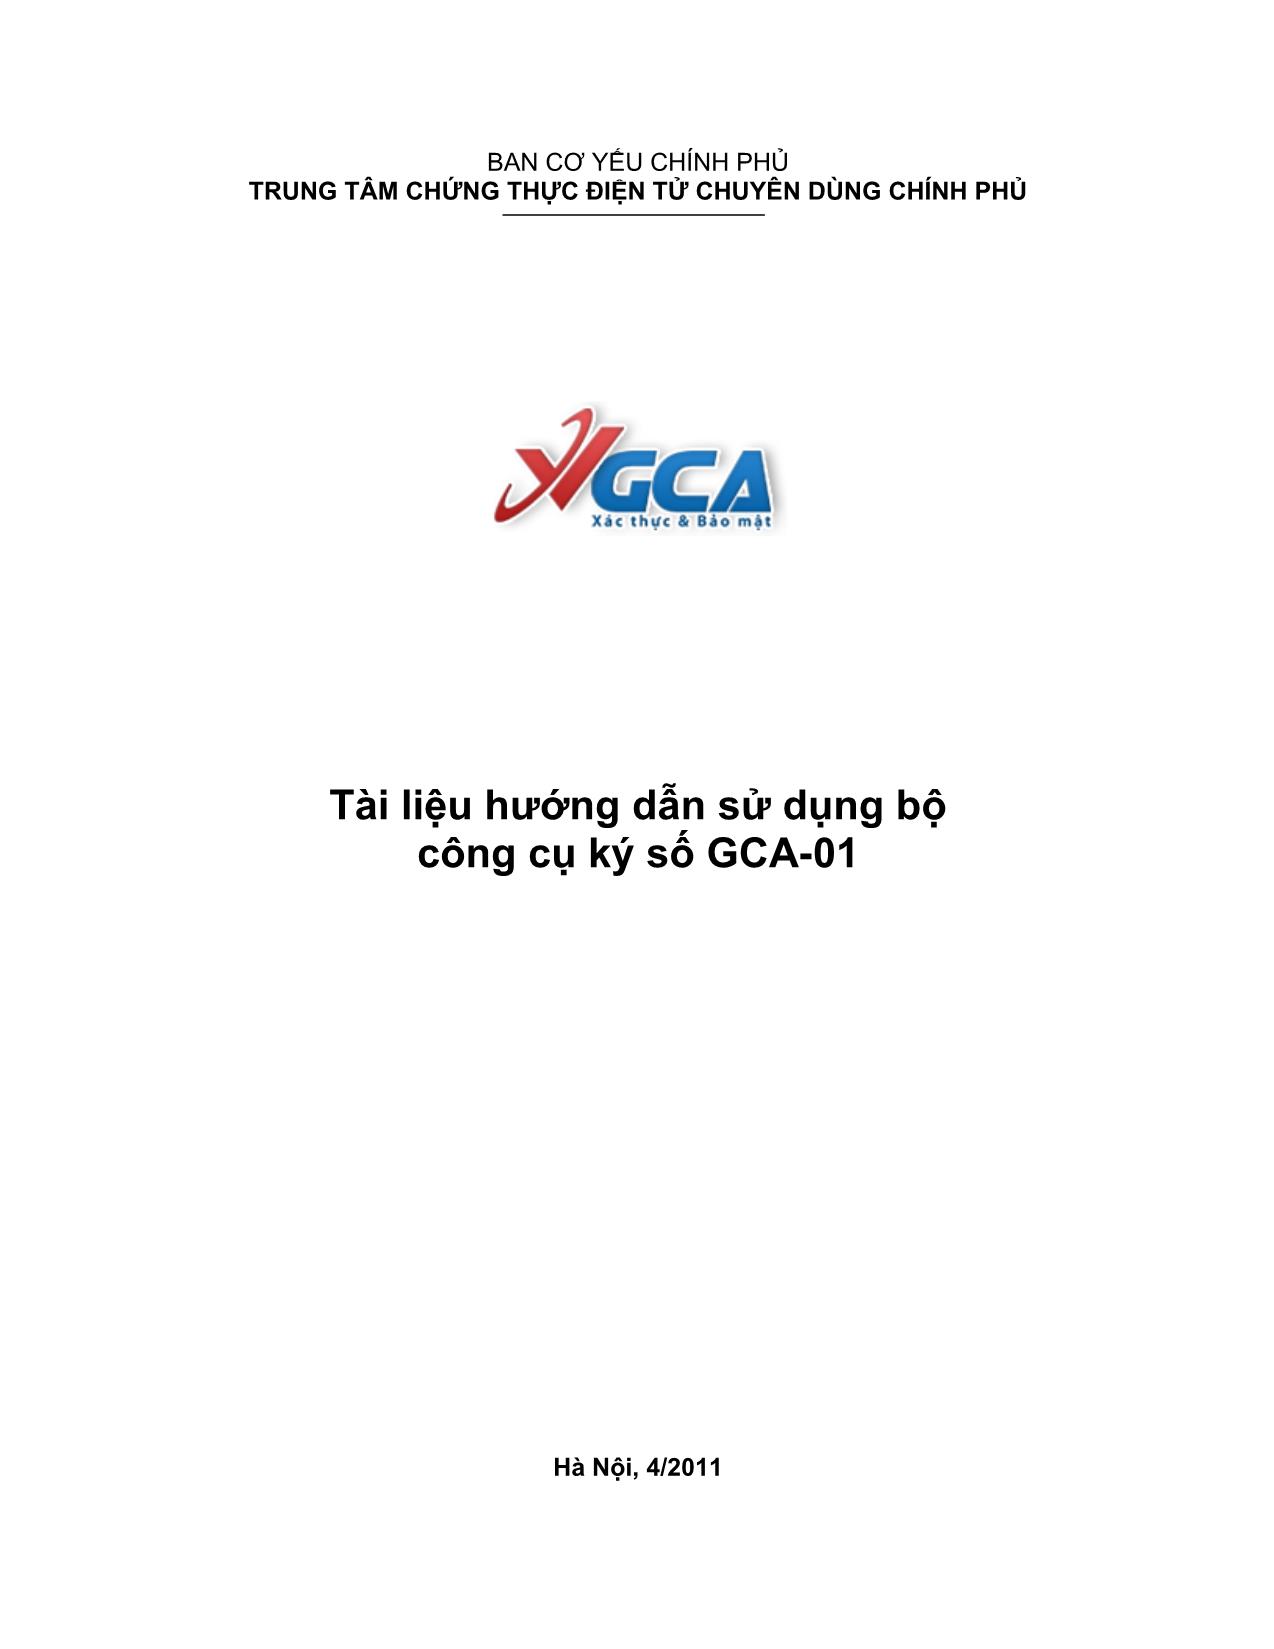 Tài liệu hướng dẫn sử dụng bộ công cụ ký số GCA-01 trang 1